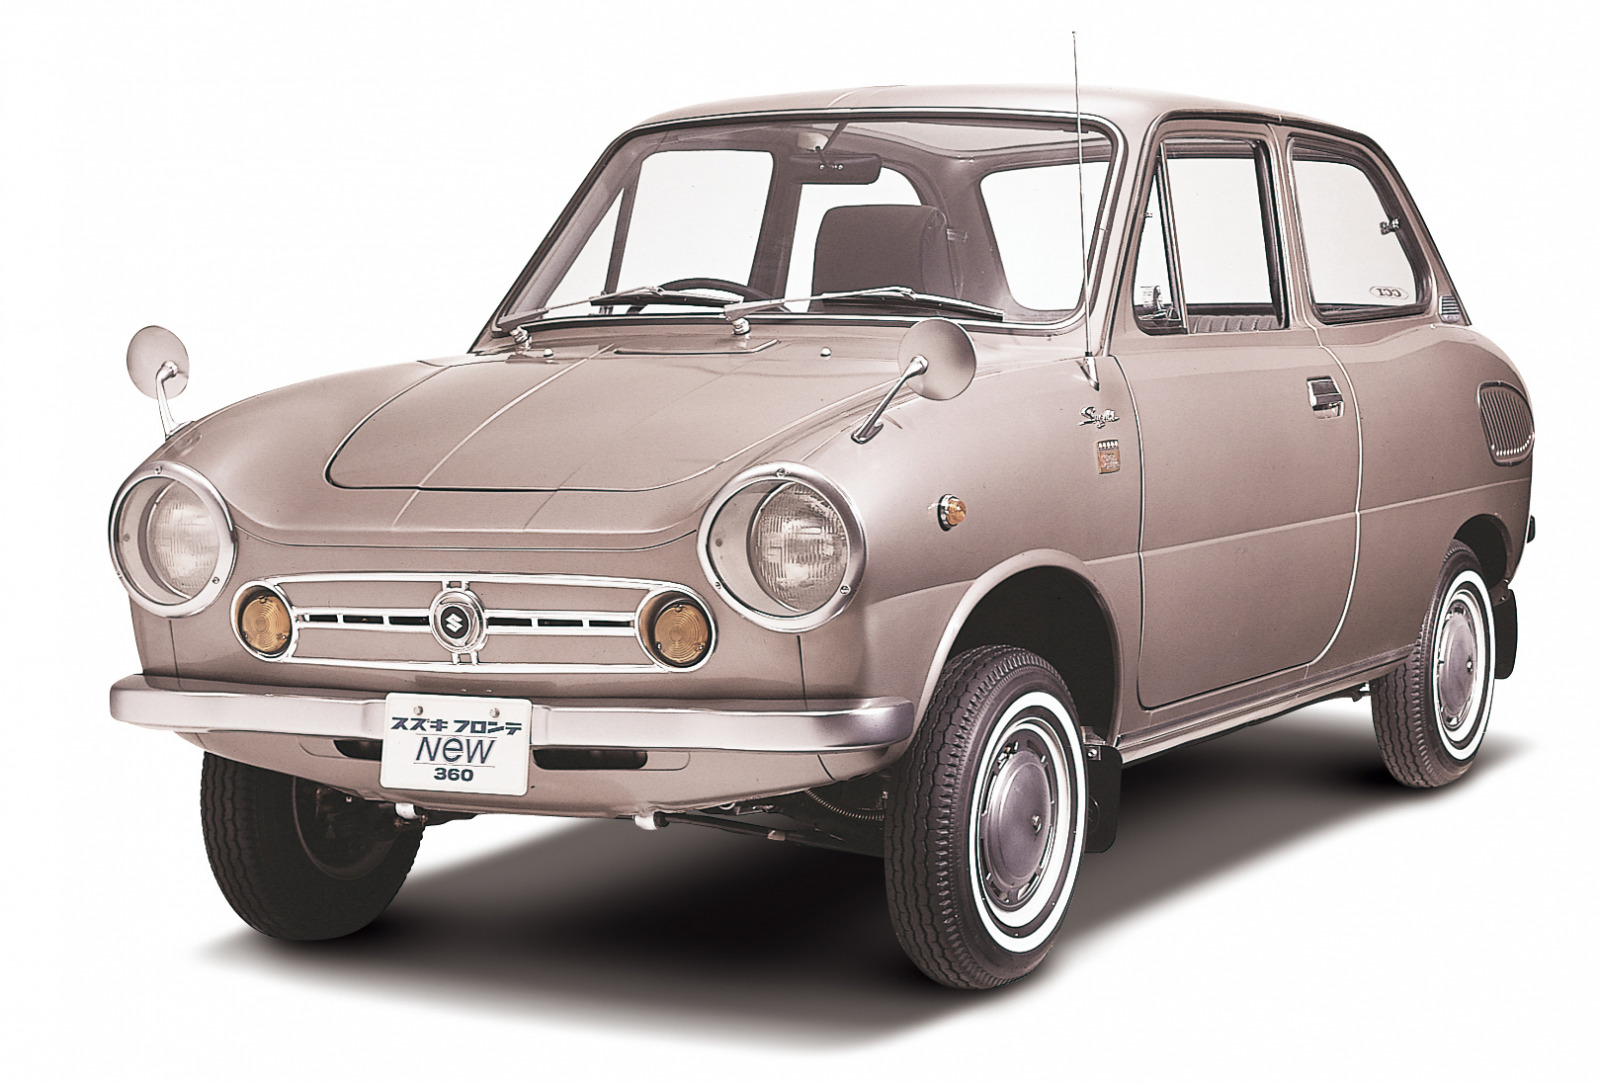 1967 フロンテ Lc10 Im 画像 フロンテクーペ 軽自動車の枠でジウジアーロデザインの世界一小さなスポーツカーの誕生 スズキ100年史 第14回 第3章 その4 Clicccar Com